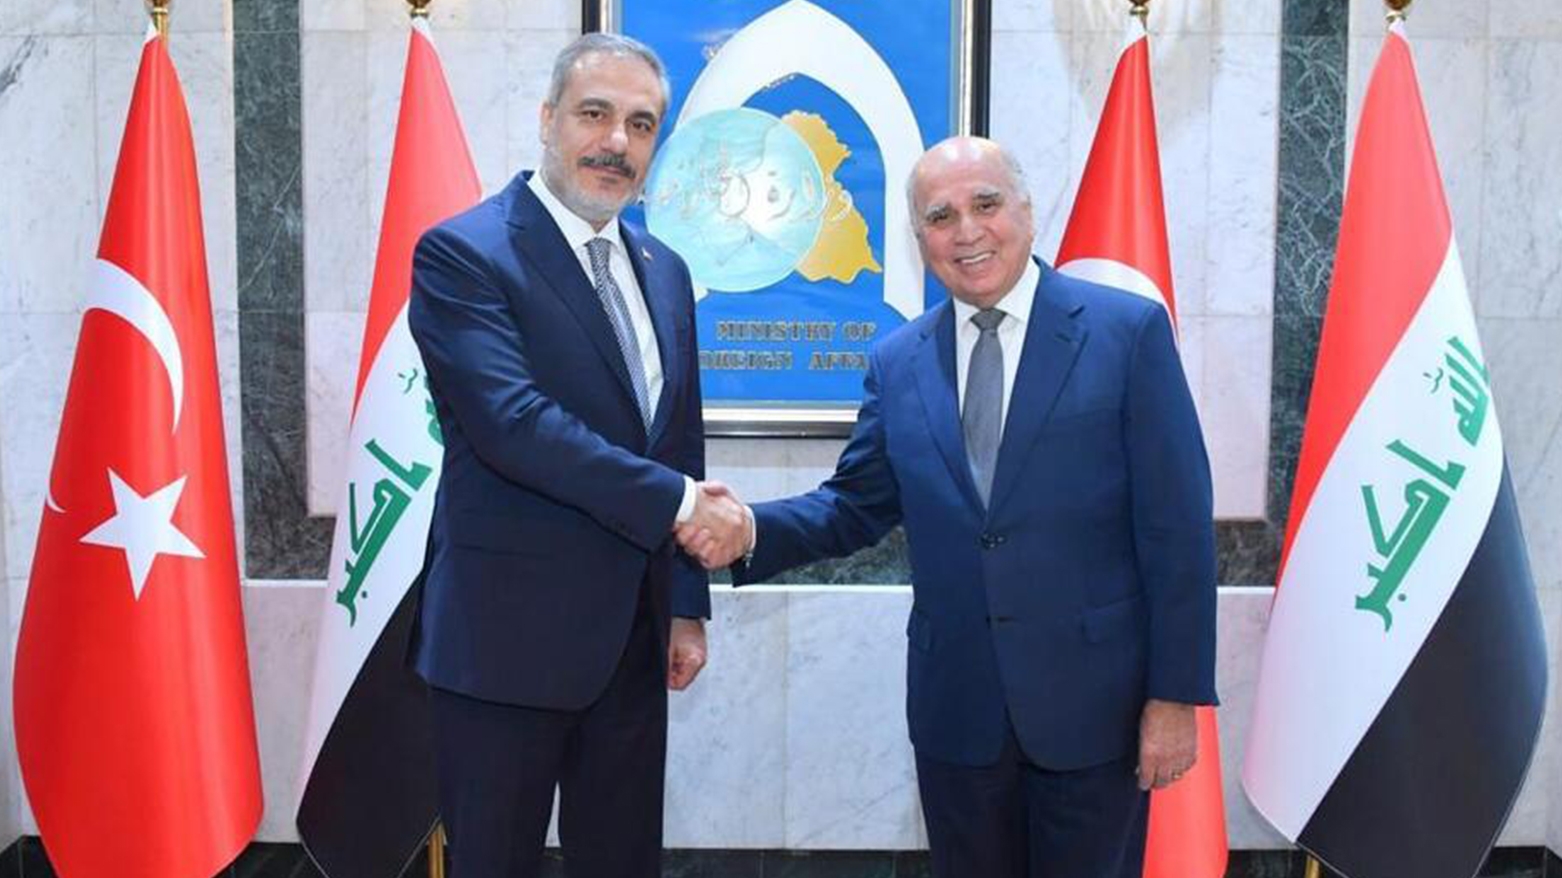 وزيرا خارجية العراق وتركيا يبحثان الاعتداء الإيراني على أربيل